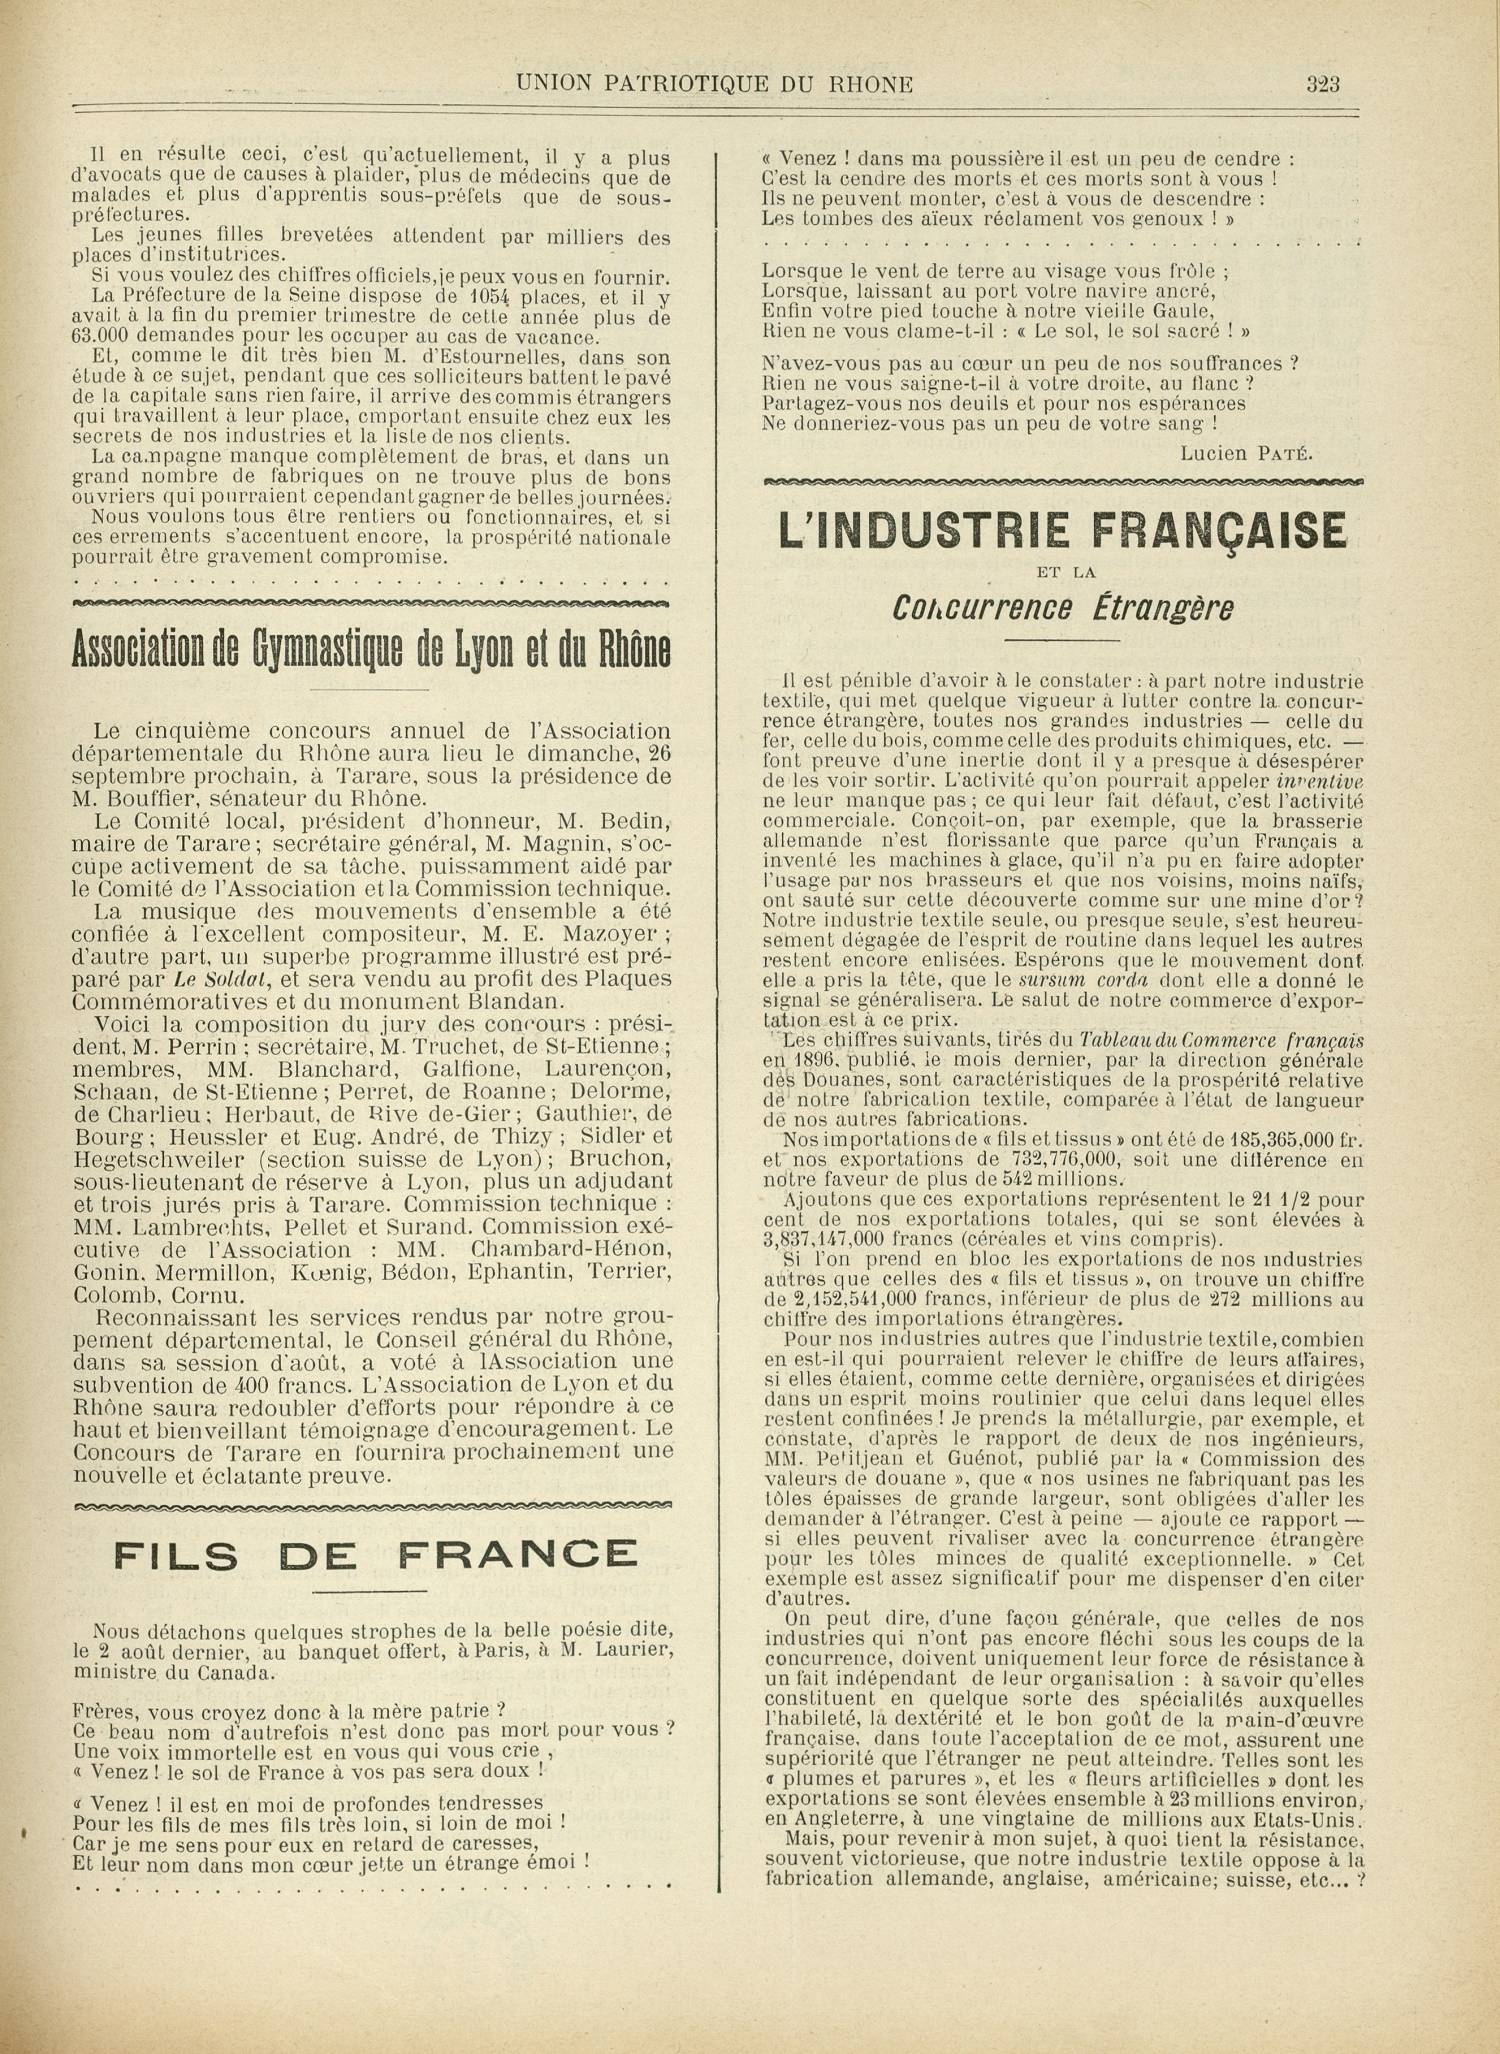 Contenu textuel de l'image : L'INDUSTRIE FRANÇAISE 